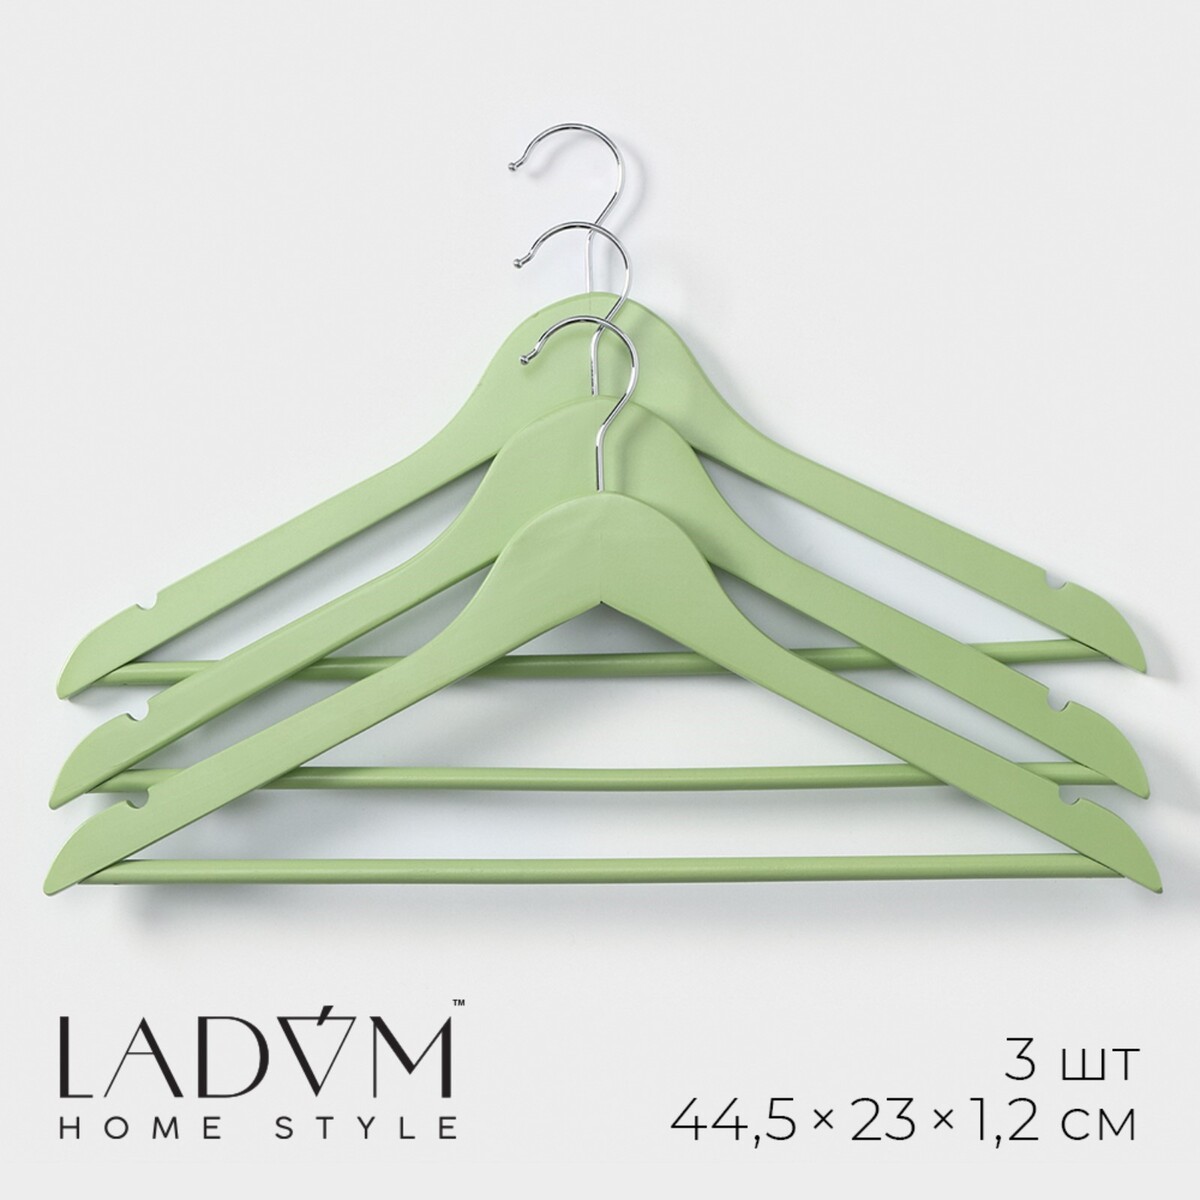 Плечики - вешалки для одежды деревянные ladо́m brillant, 44,5×23×1,2 см, 3 шт, цвет зеленый плечики вешалки для одежды ladо́m